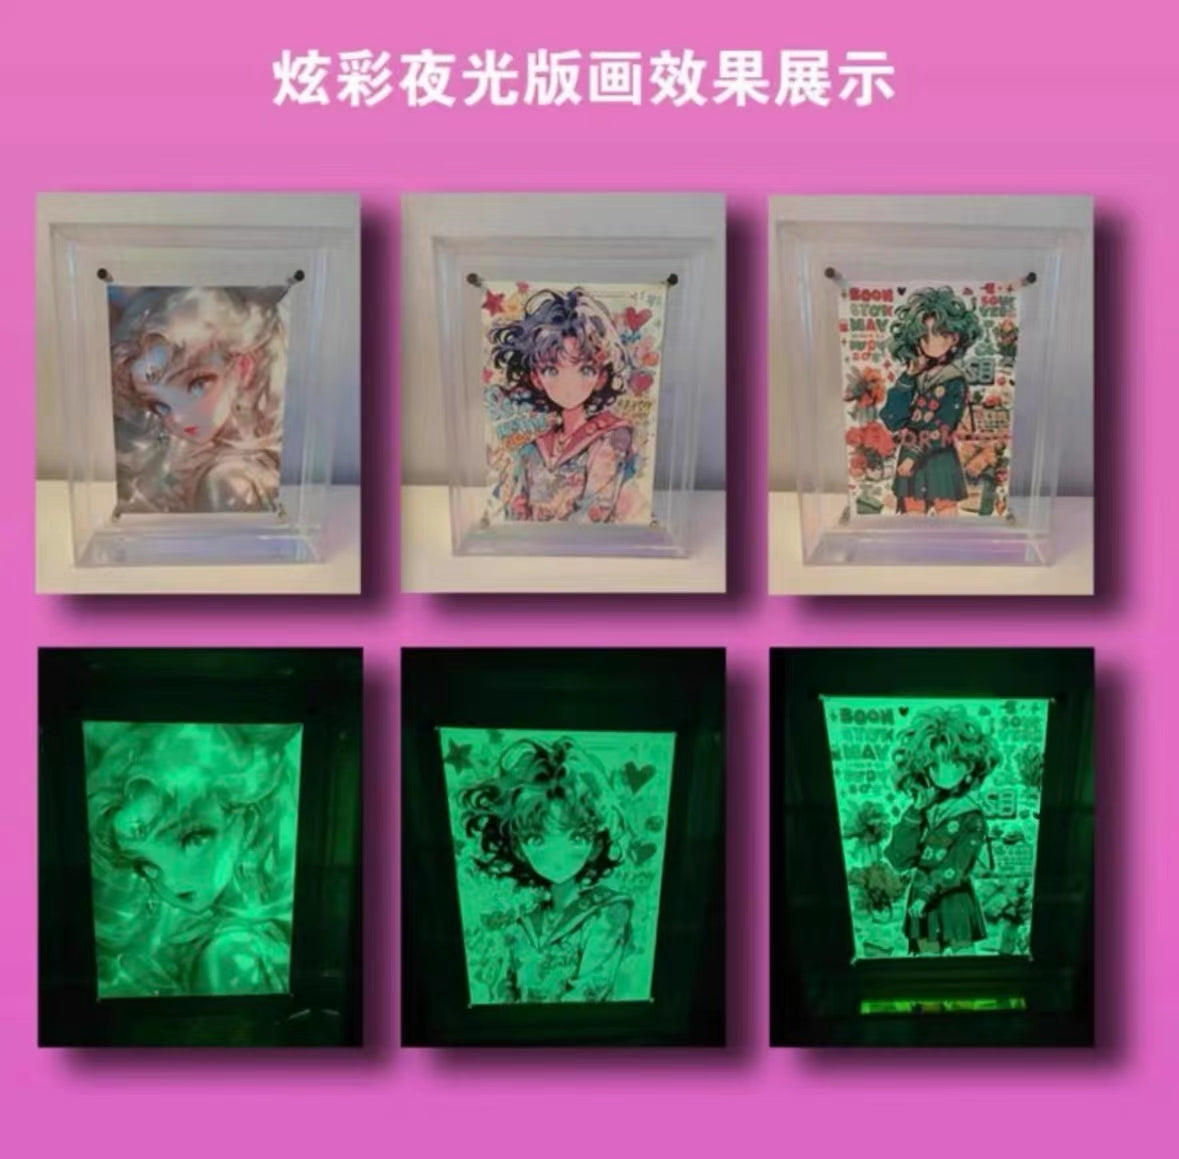 Booster-Xiang Nan Gong Zuo Shi Anime Collection Colorful Card